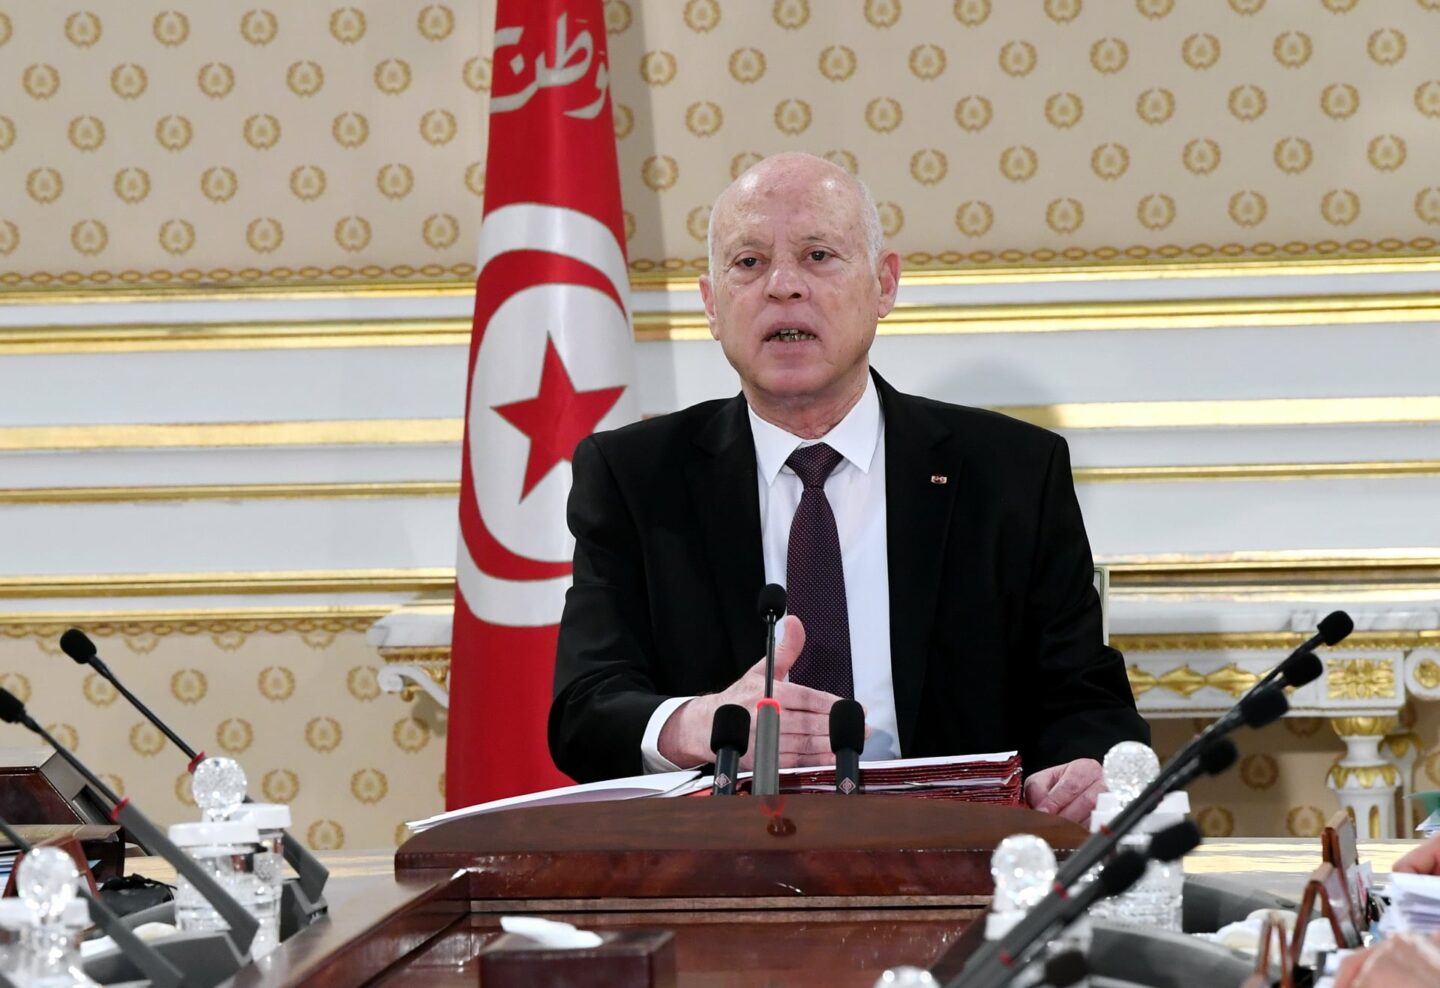 Attaques antimigrants en Tunisie : la Banque mondiale suspend son principal programme